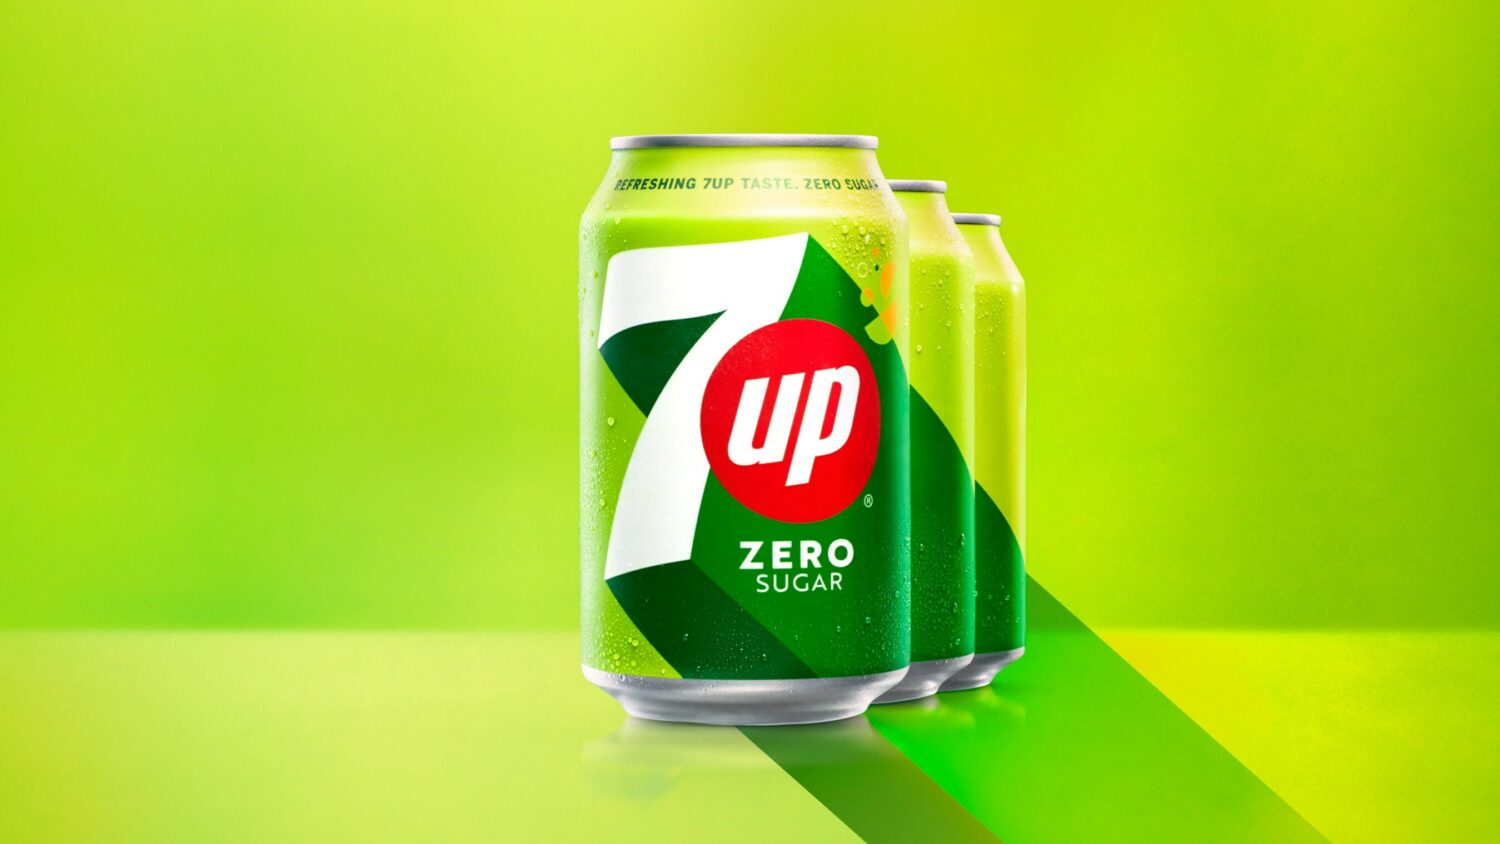 7UP Visual, Quelle: PepsiCo